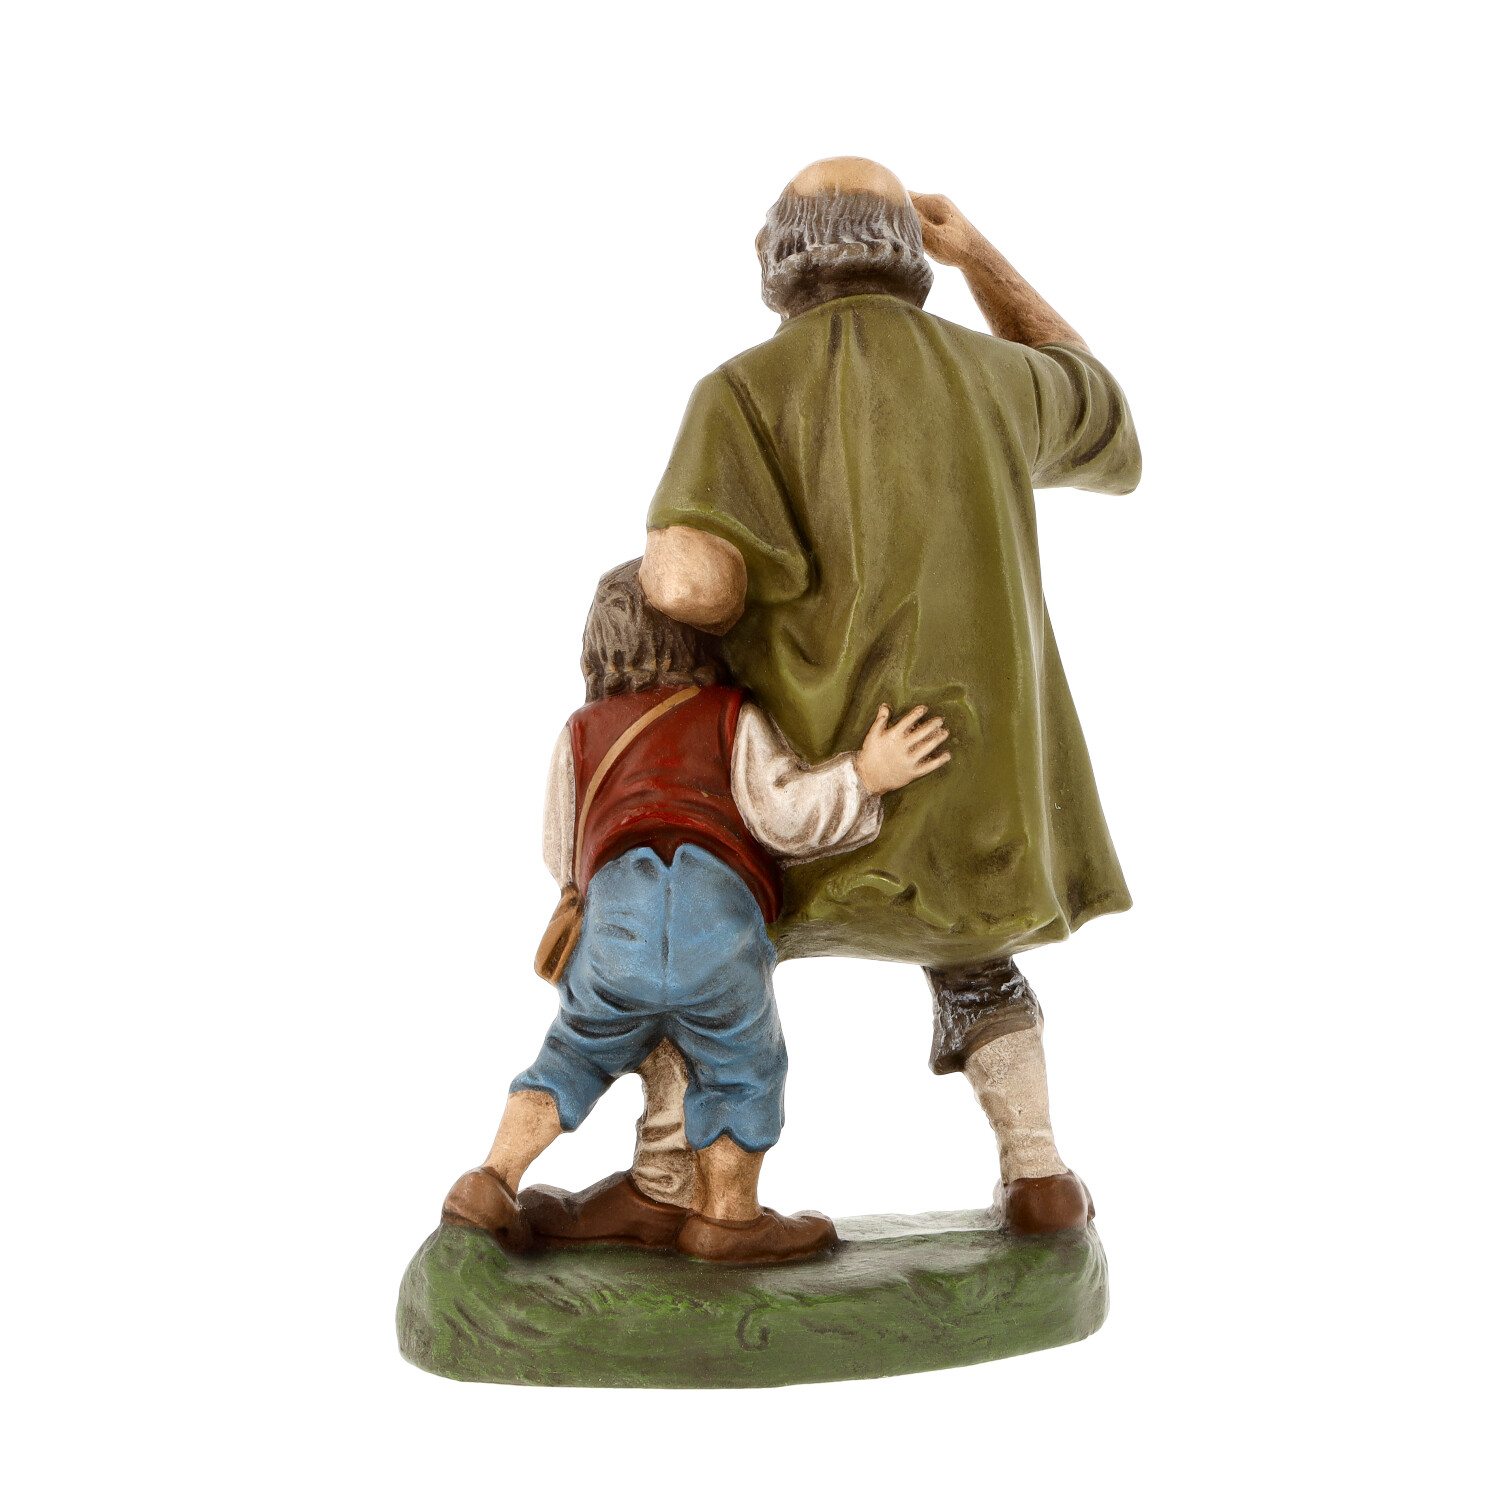 Old shepherd with shepherd boy - Marolin Nativity figure - made in Germany